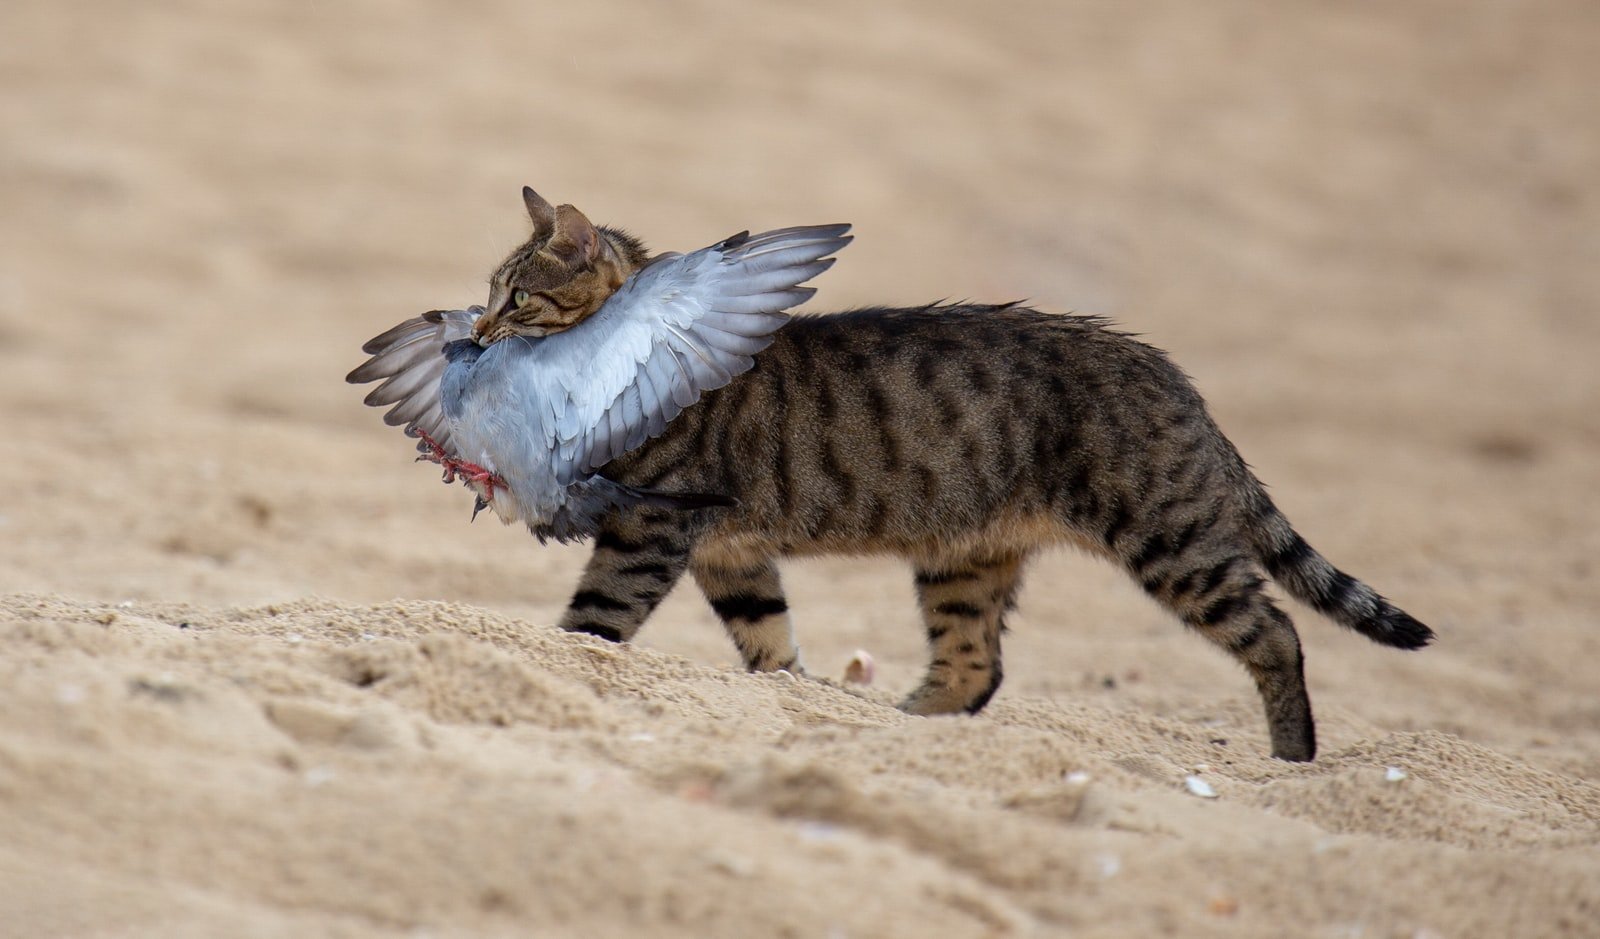 Gato mostrando su habilidad como cazador al atrapar un pÃ¡jaro en el aire